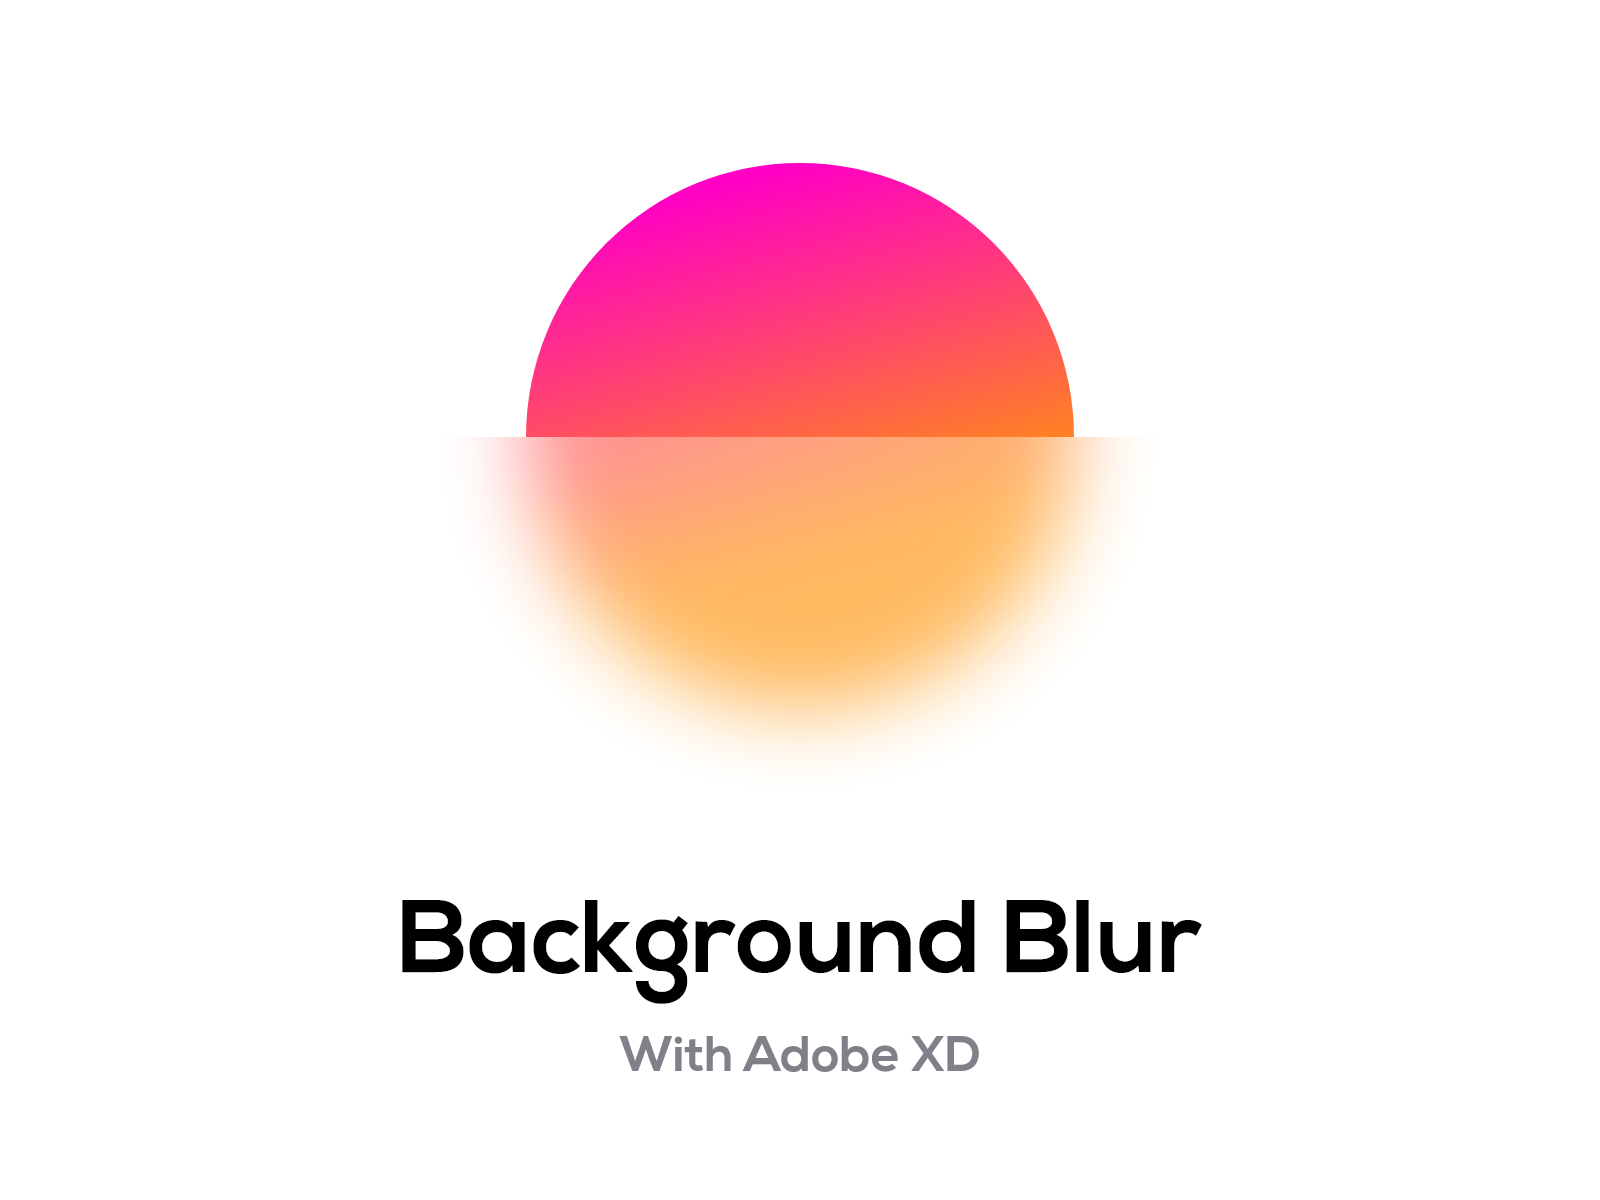 Adobe XD Background Blur là tính năng mang đến cho bạn sự phong phú nhất định. Với tính năng này, bạn có thể tạo ra những hình ảnh độc đáo, thu hút sự chú ý của người xem và giúp cho hình ảnh của bạn trở nên sống động hơn.